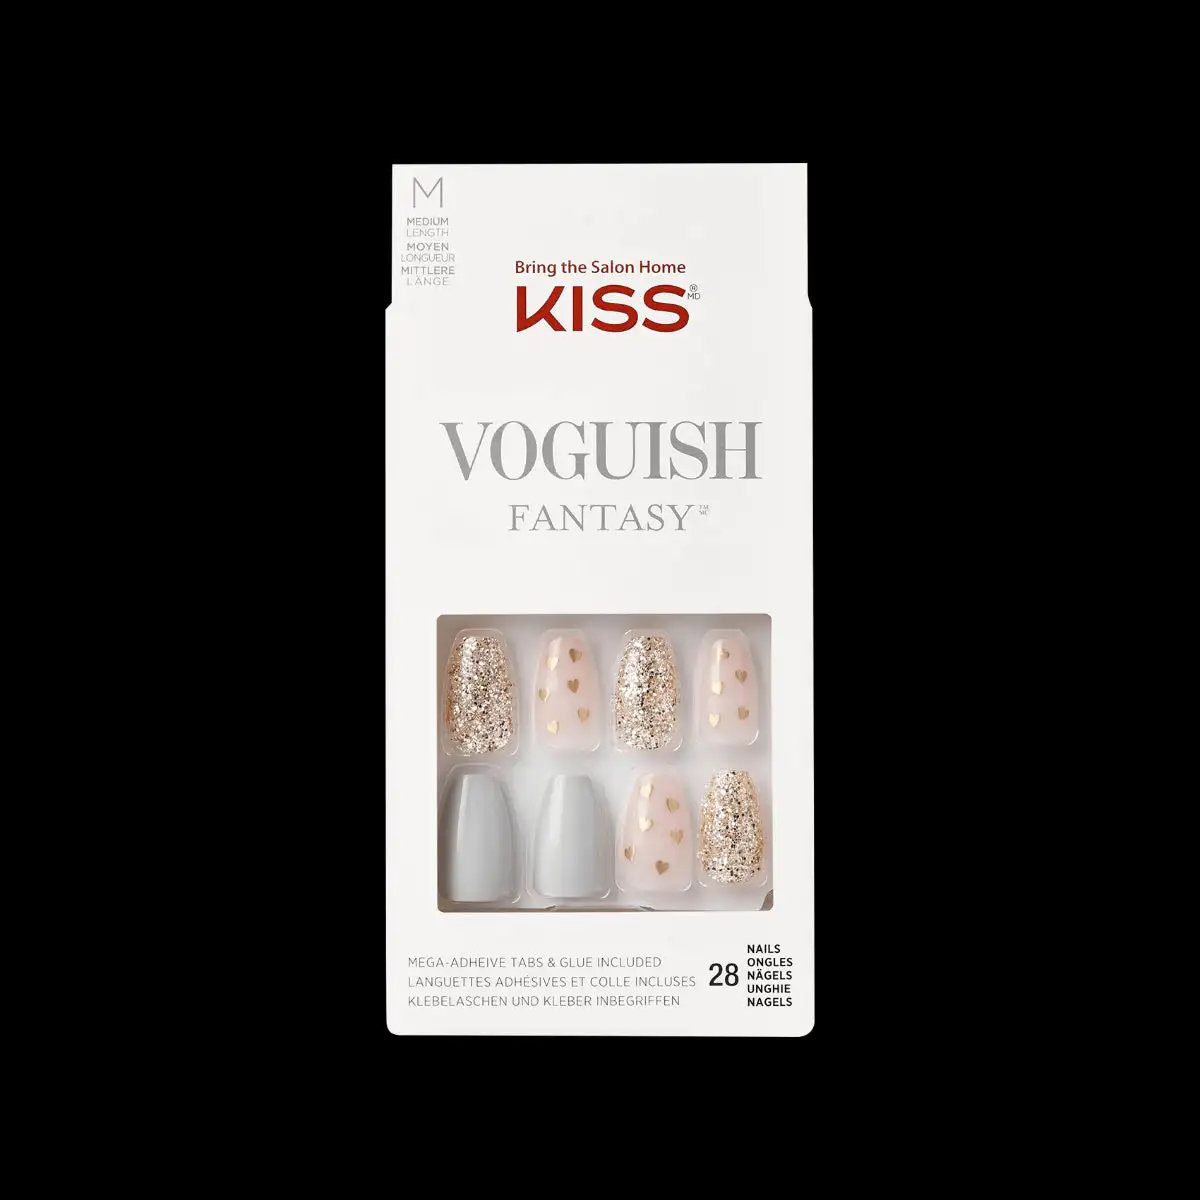 Kiss voguish fantasy nails fv08x_2006. DIAYTAR SENEGAL - Là où Chaque Produit Évoque une Émotion. Parcourez notre catalogue et choisissez des articles qui vous touchent et qui enrichissent votre expérience.